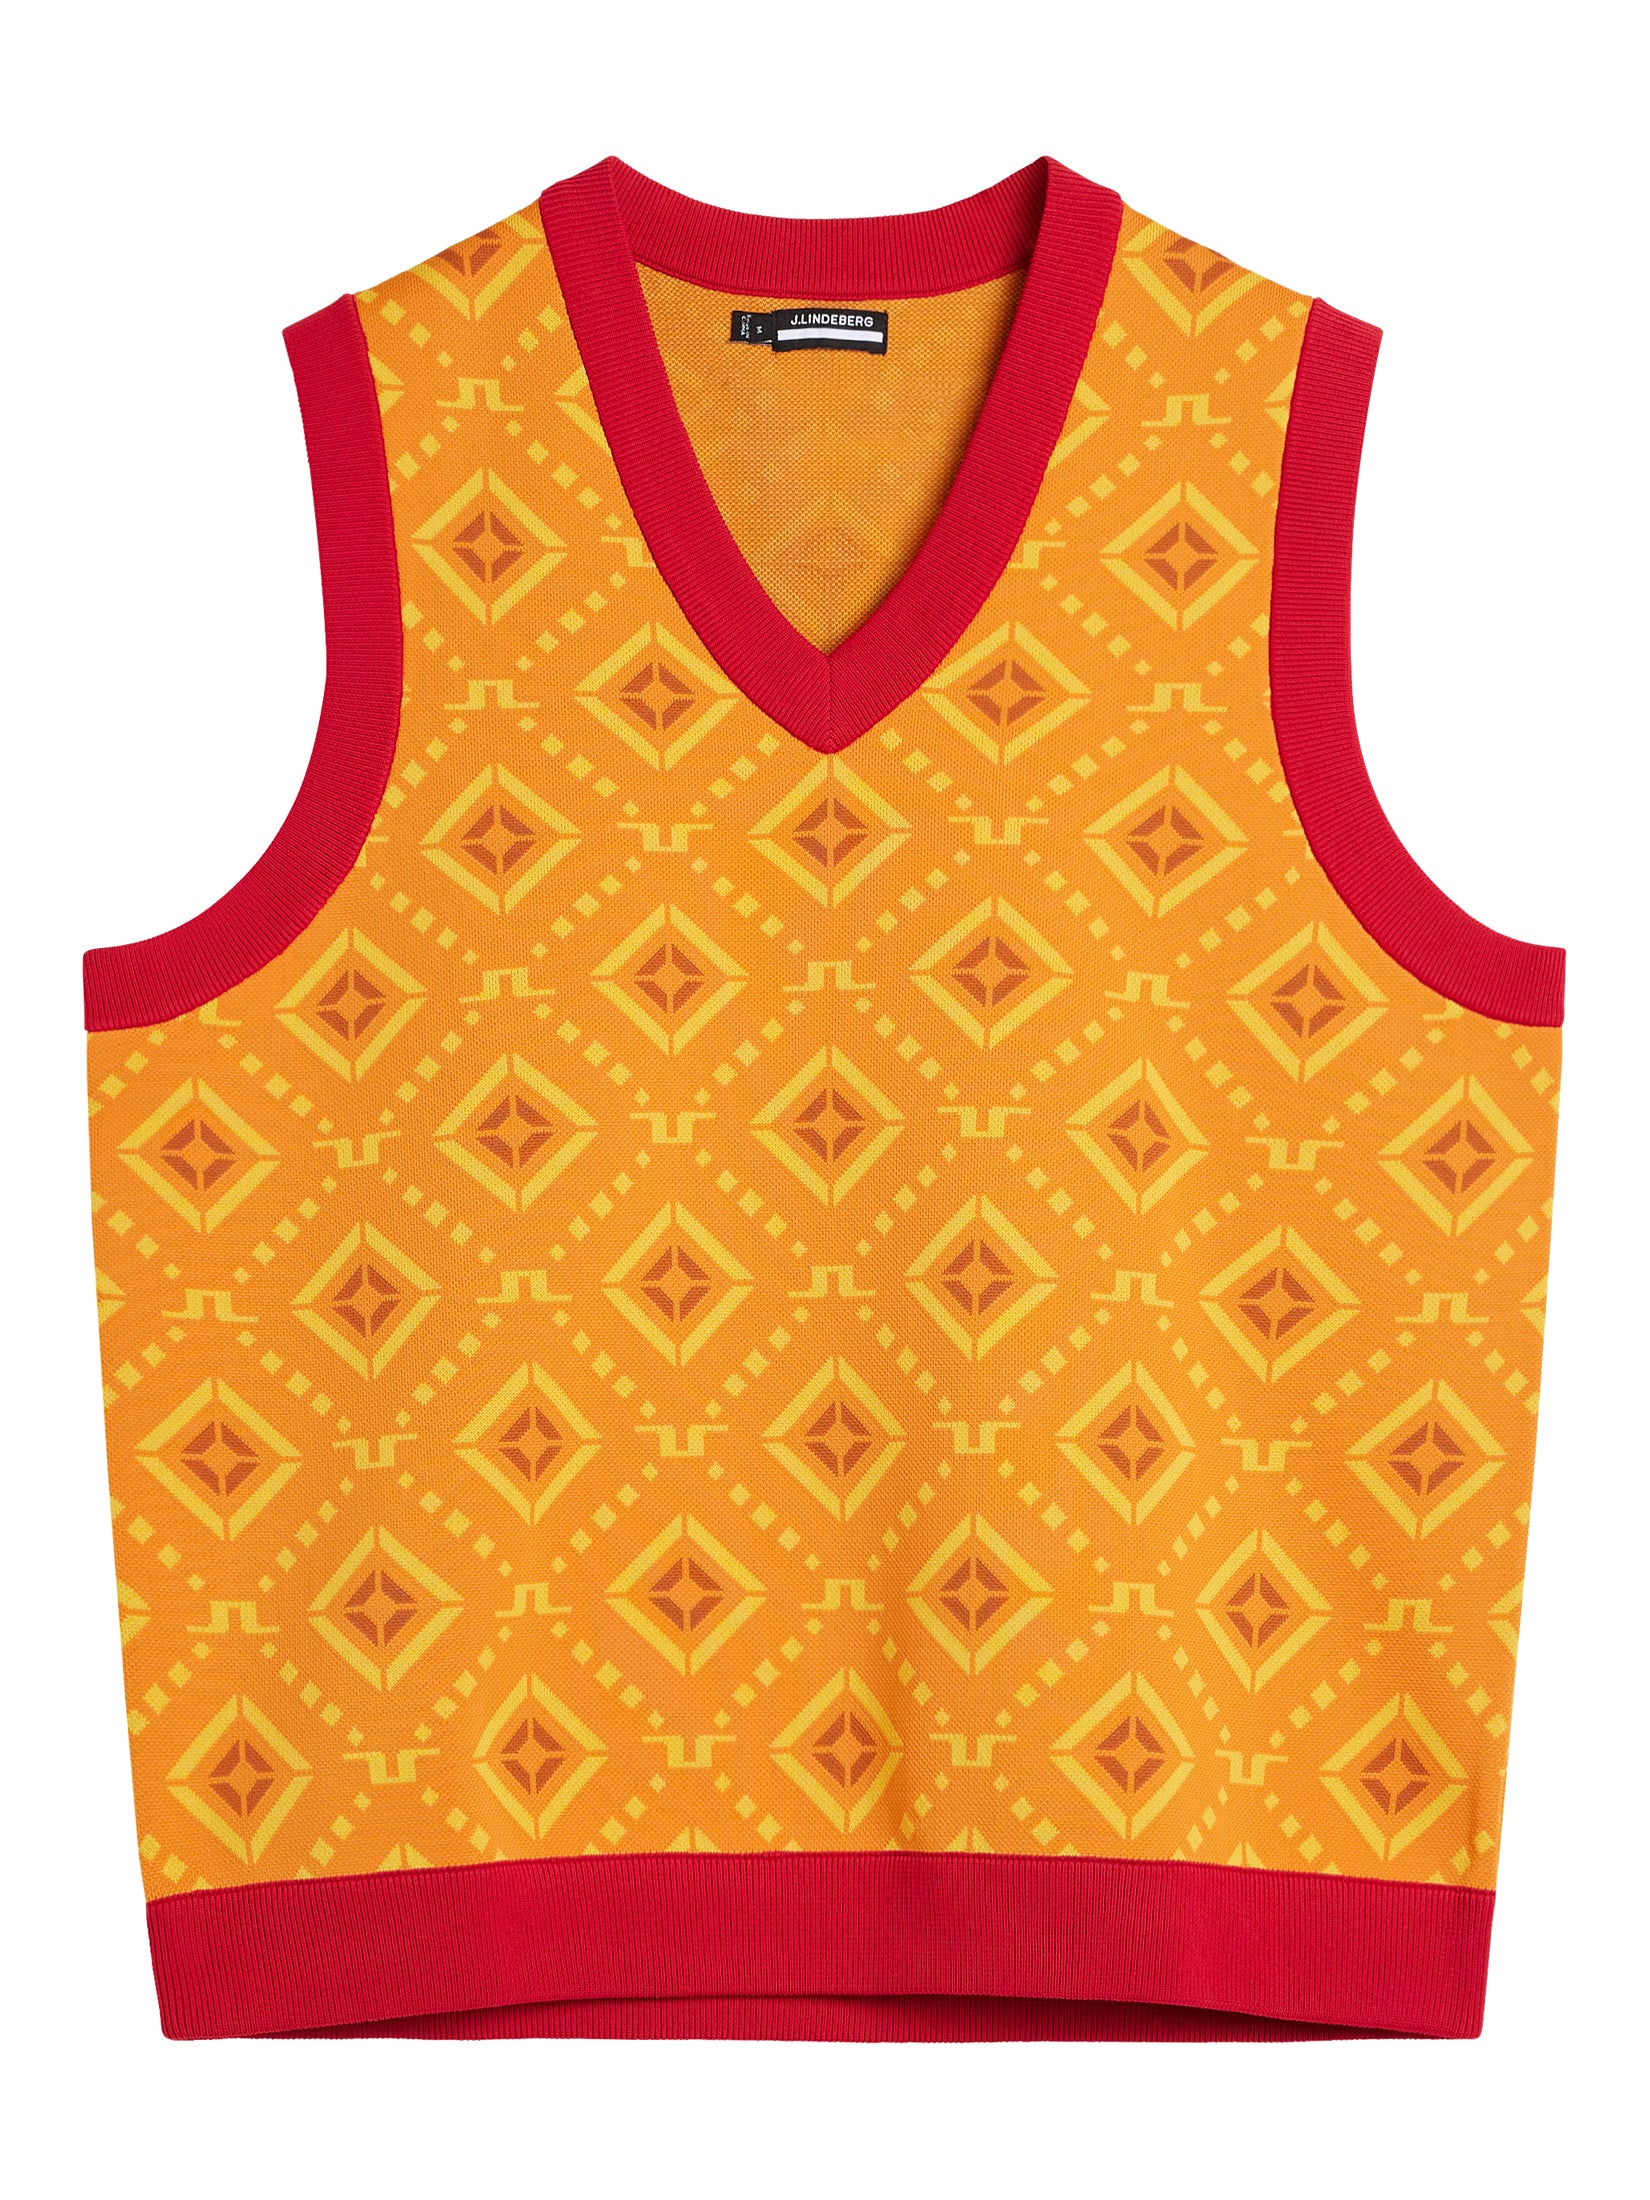 Jack Knitted Vest